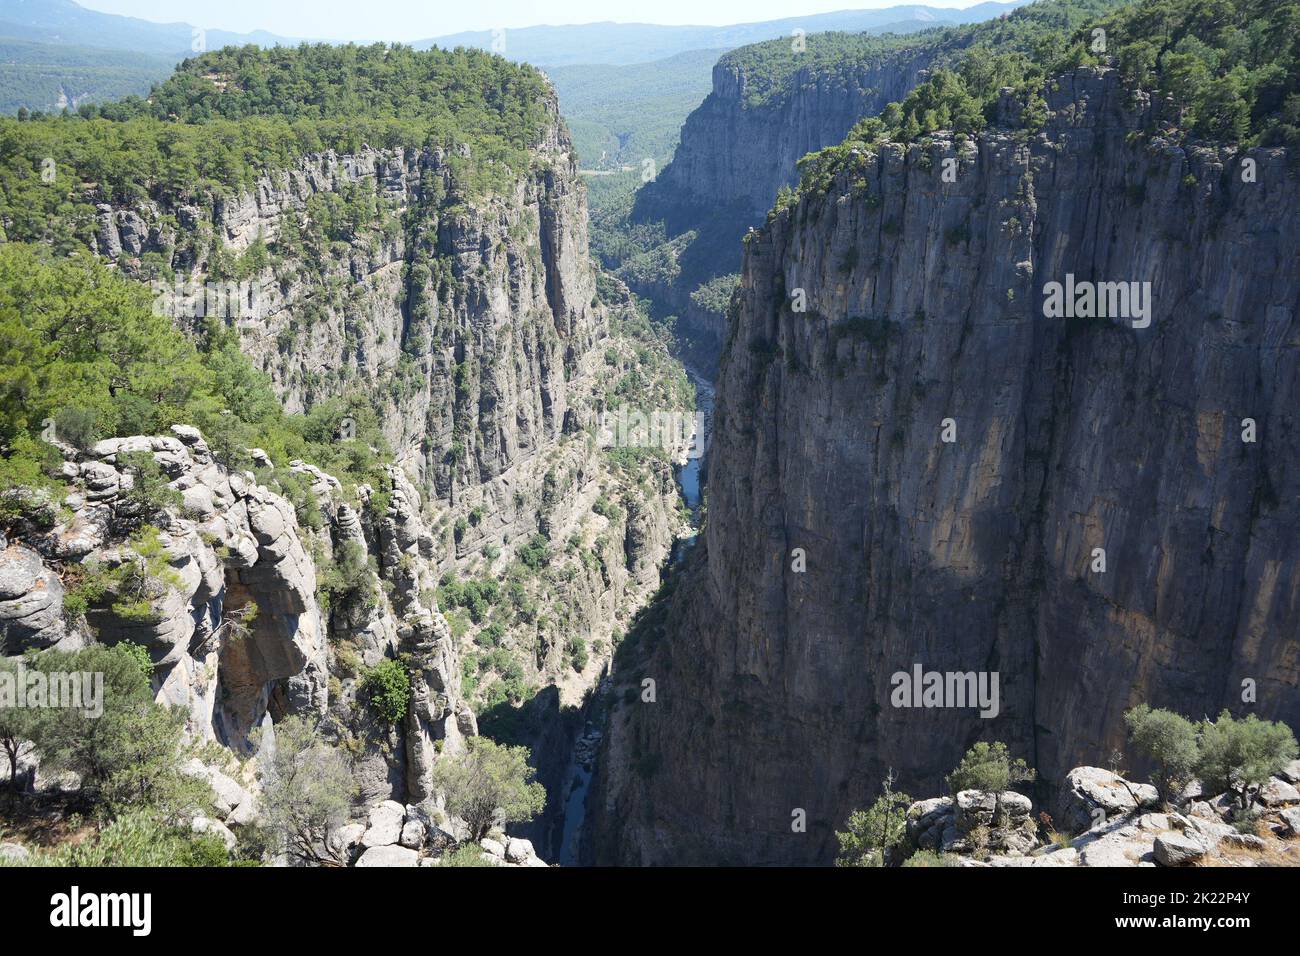 An aerial view of Tazi Kanyonu Canyon in Antalia, Turkey Stock Photo